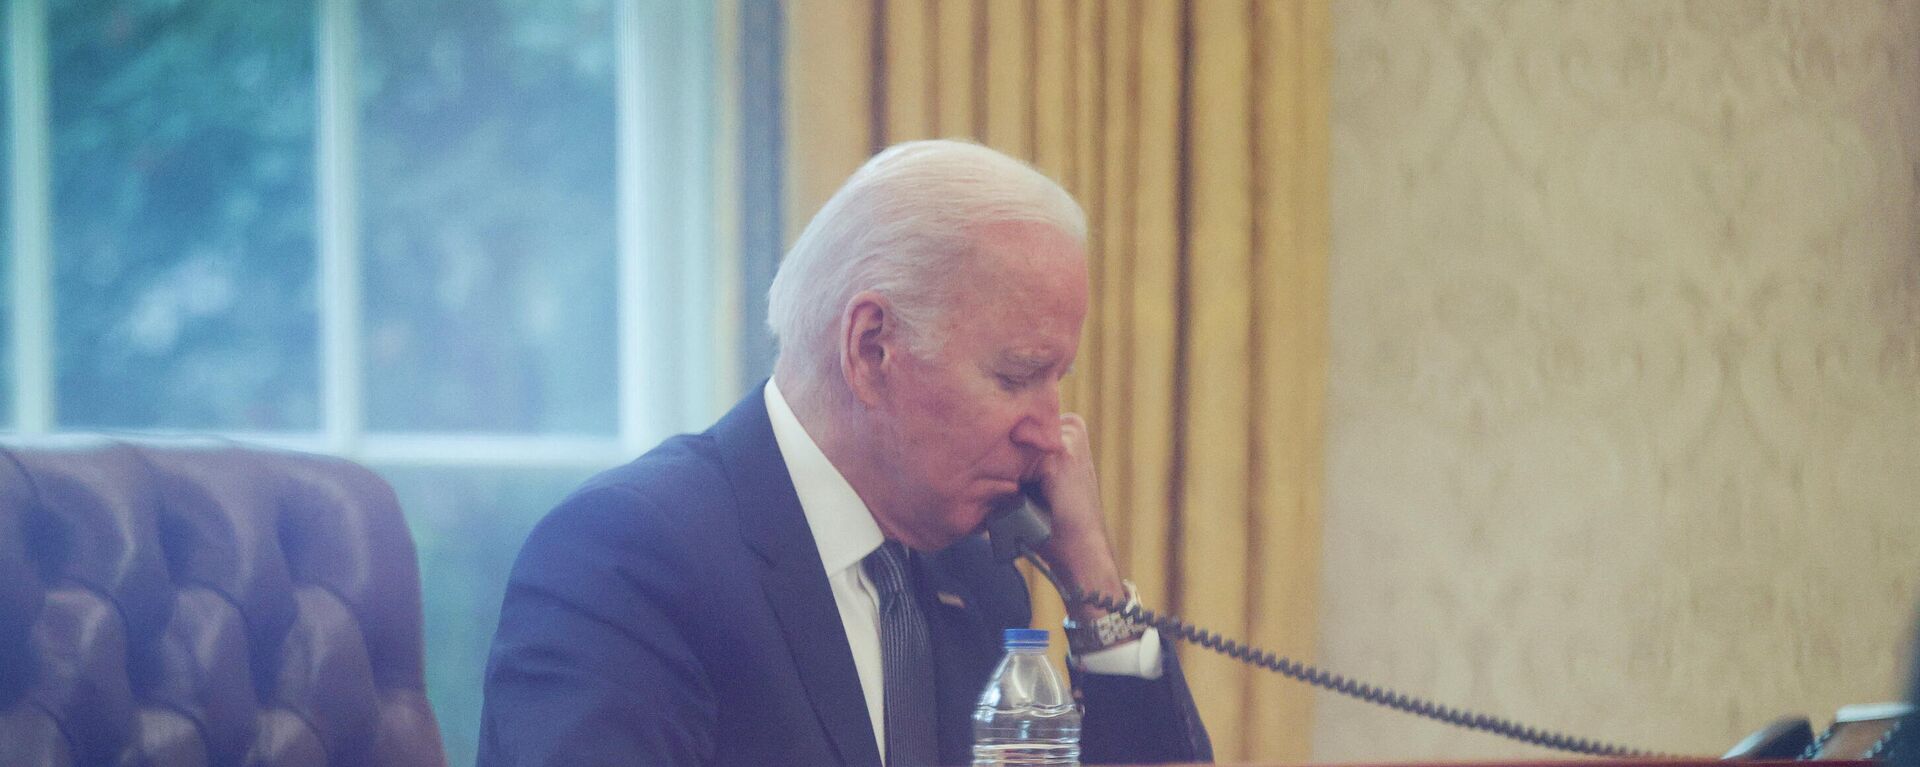 Joe Biden, presidente de Estados Unidos, en una conversación telefónica (archivo) - Sputnik Mundo, 1920, 02.01.2022